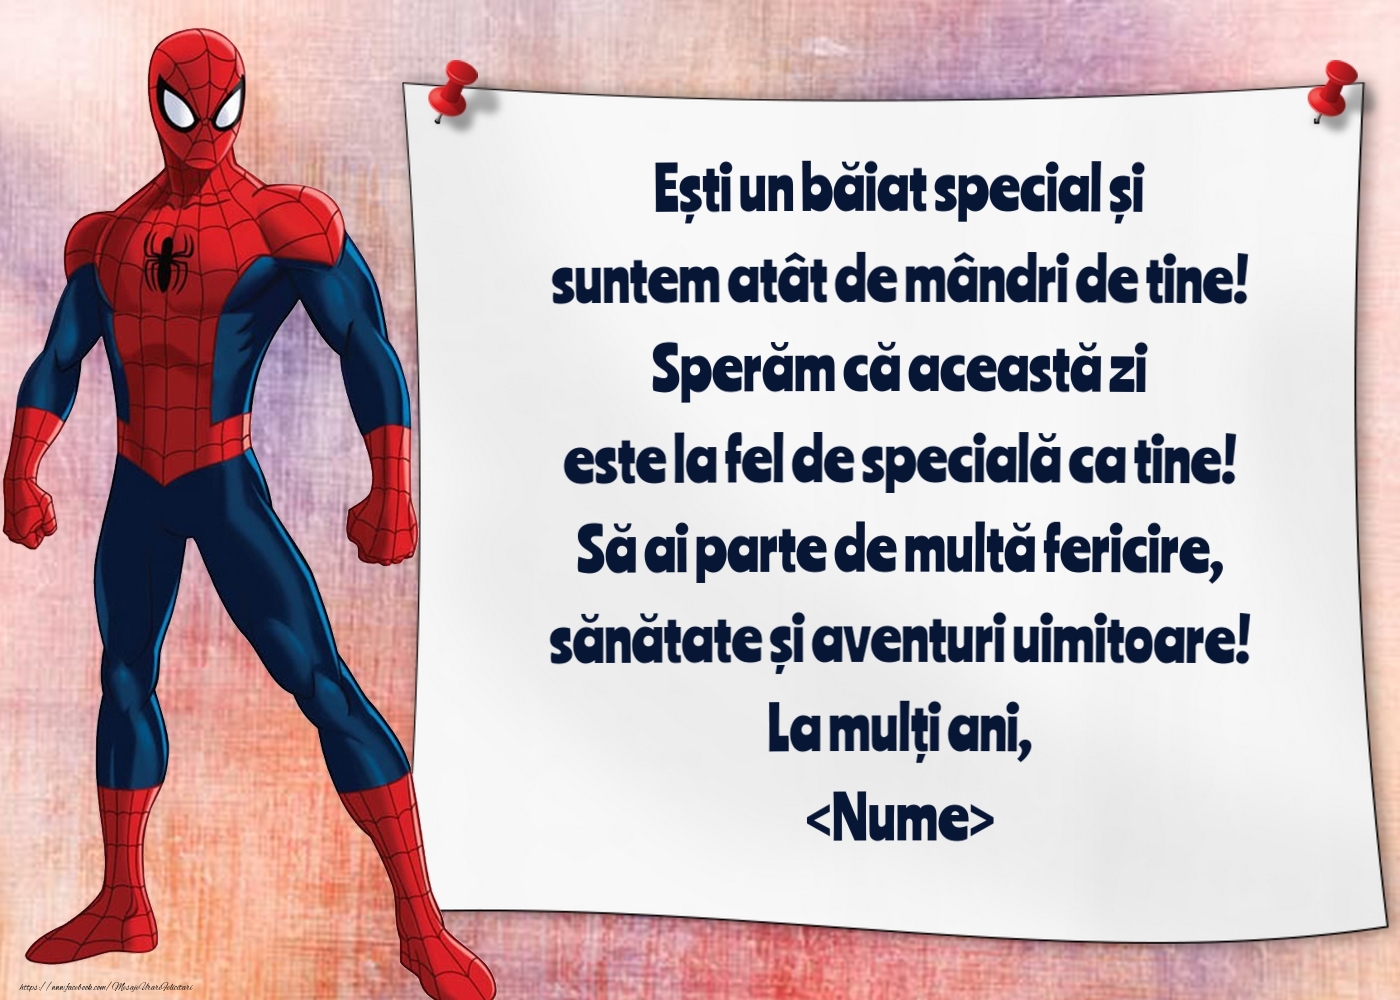 Felicitari personalizate pentru copii - Imagine cu Spiderman și un ecran pe perete - model pentru băieți